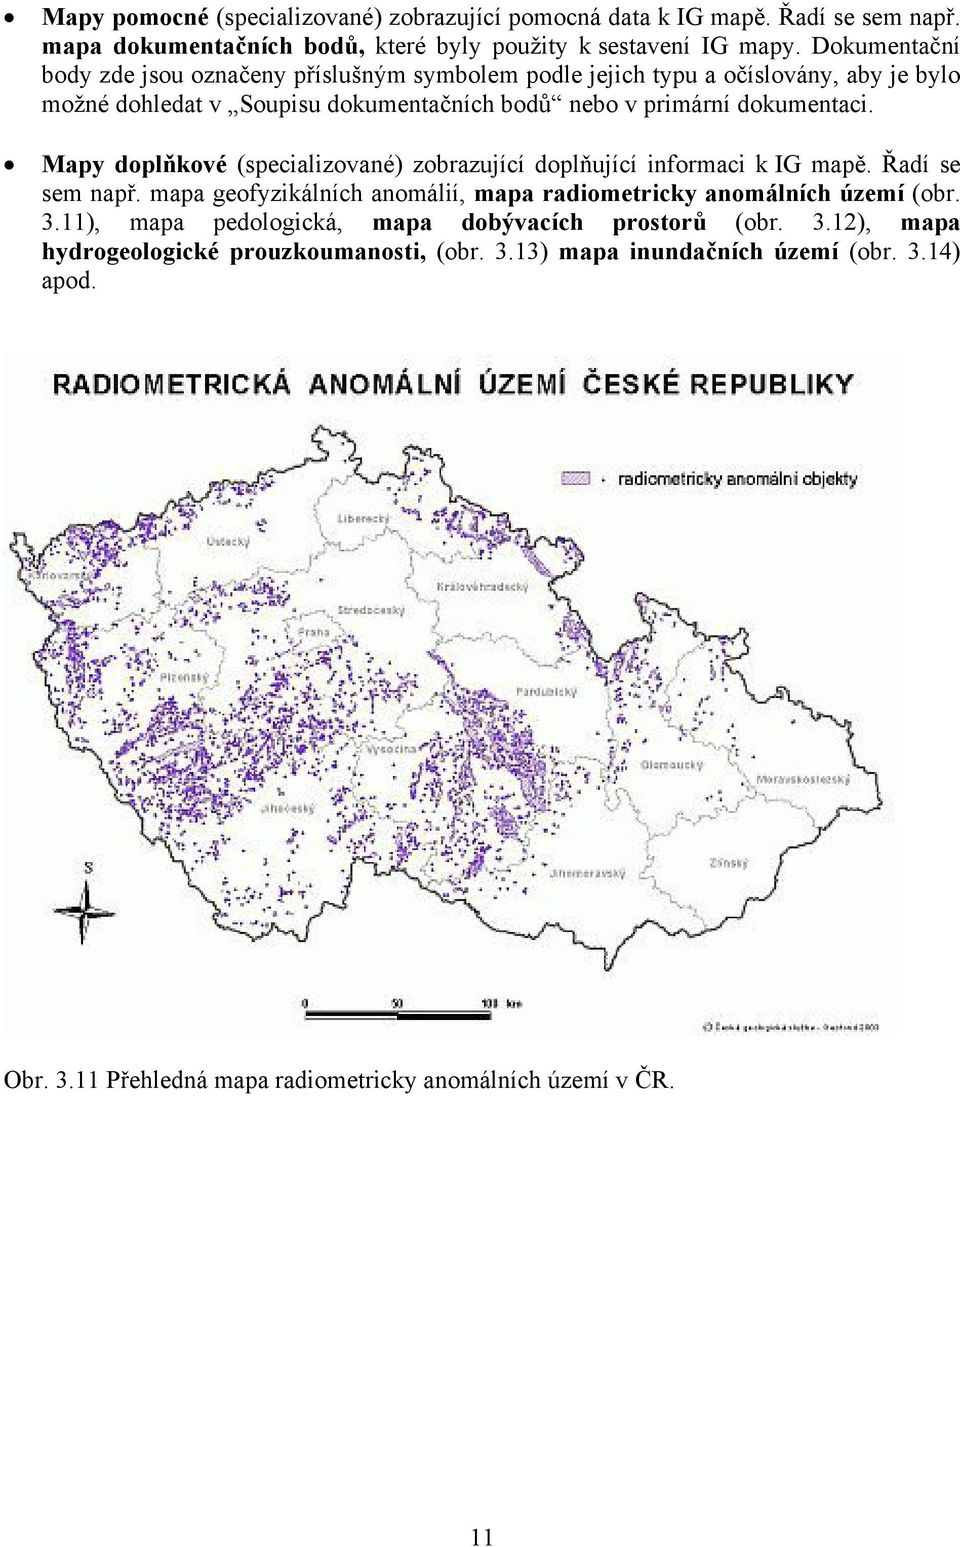 Mapy doplňkové (specializované) zobrazující doplňující informaci k IG mapě. Řadí se sem např. mapa geofyzikálních anomálií, mapa radiometricky anomálních území (obr. 3.